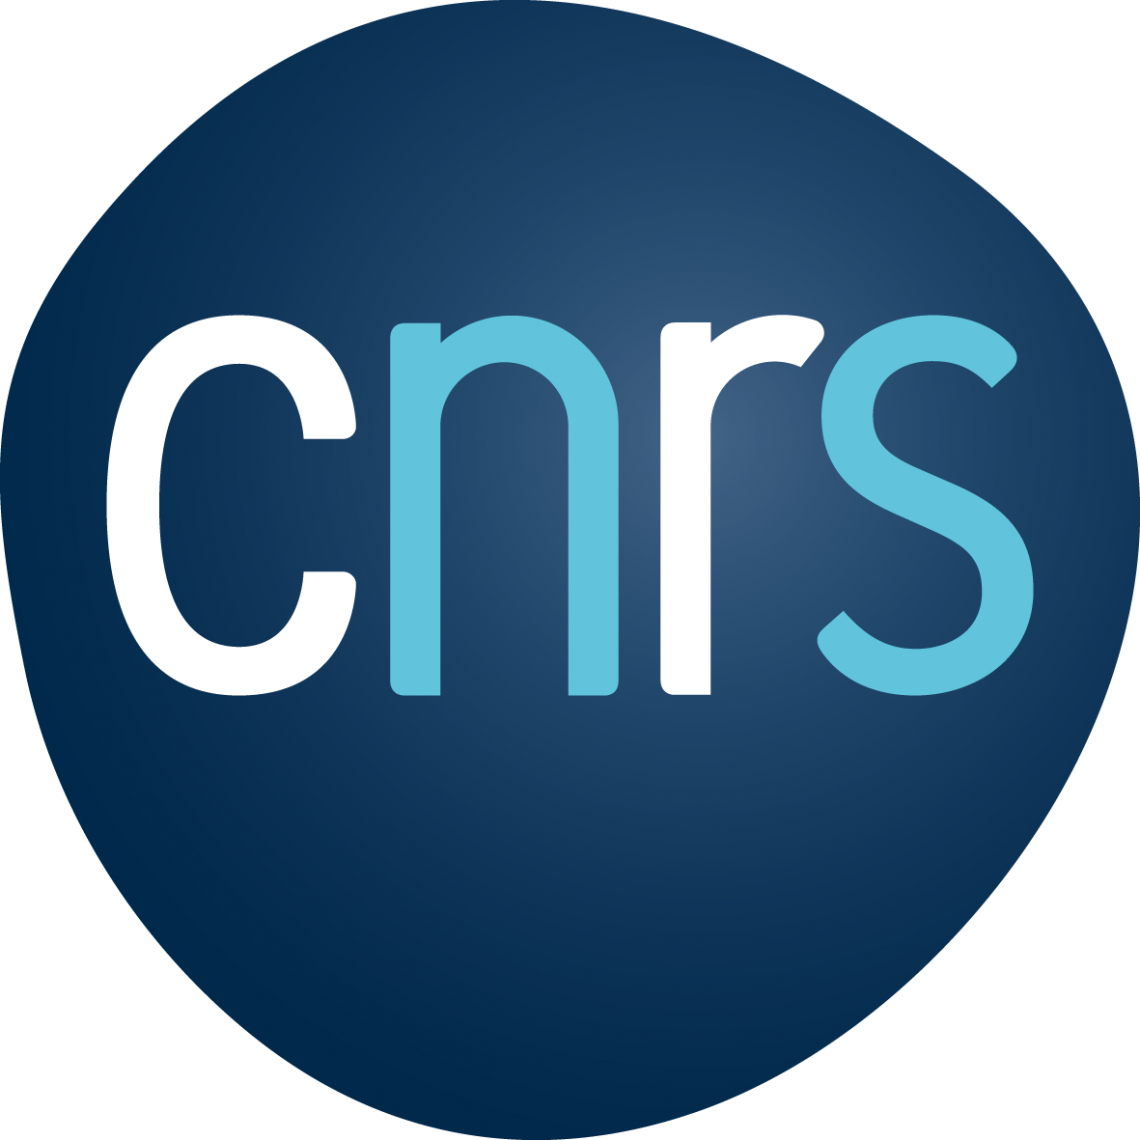 Concours Chercheur.e.s CNRS 2022 